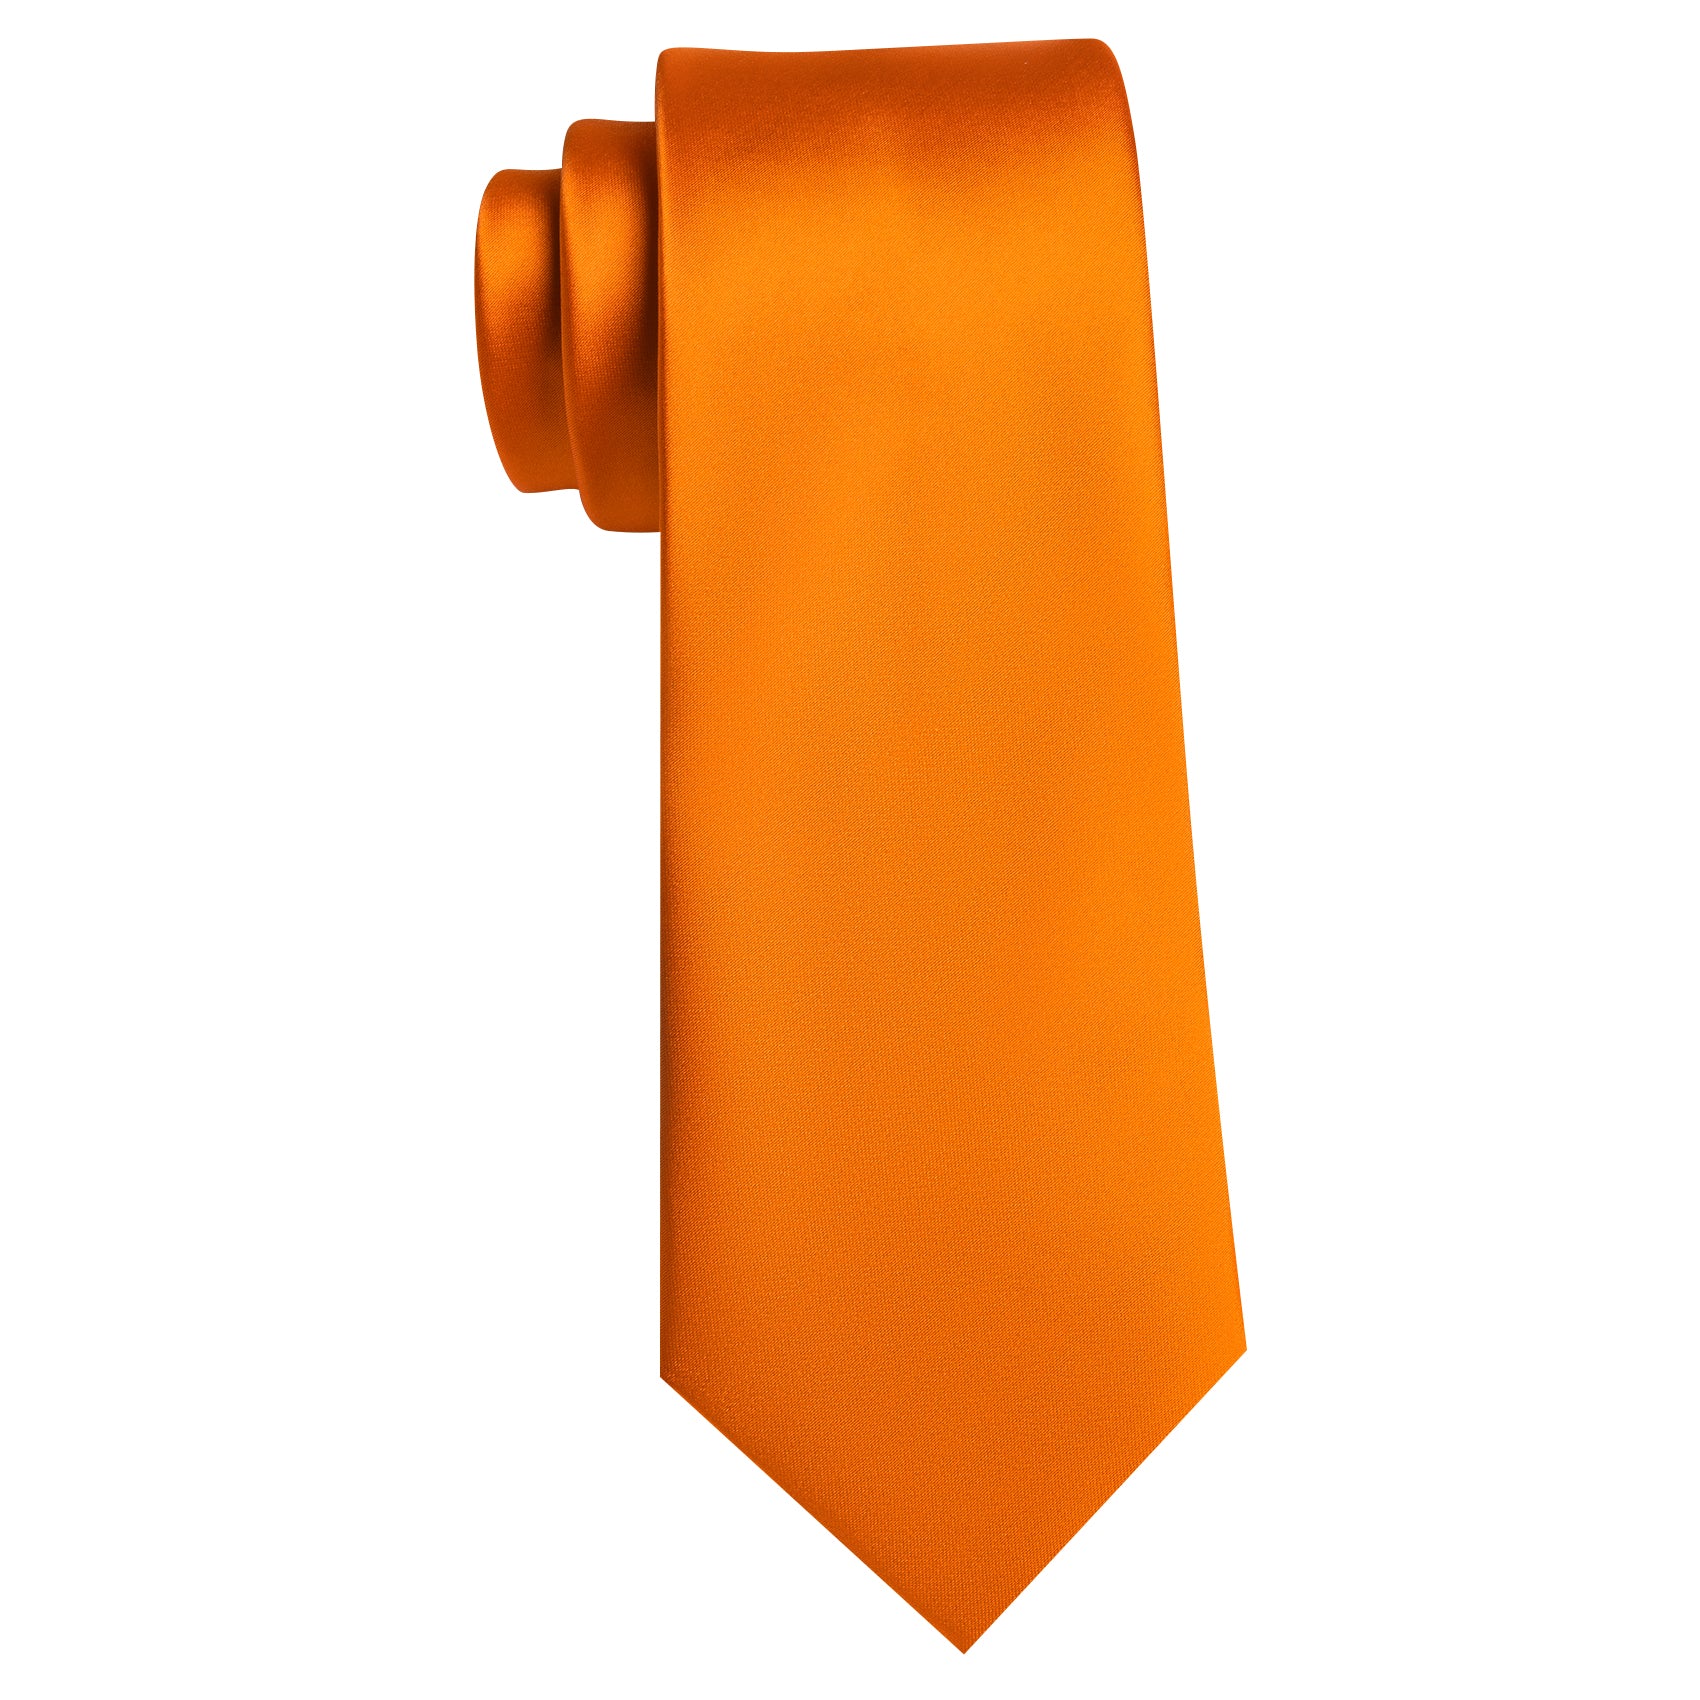 Orange Solid Silk Tie Pocket Square Cufflinks Set